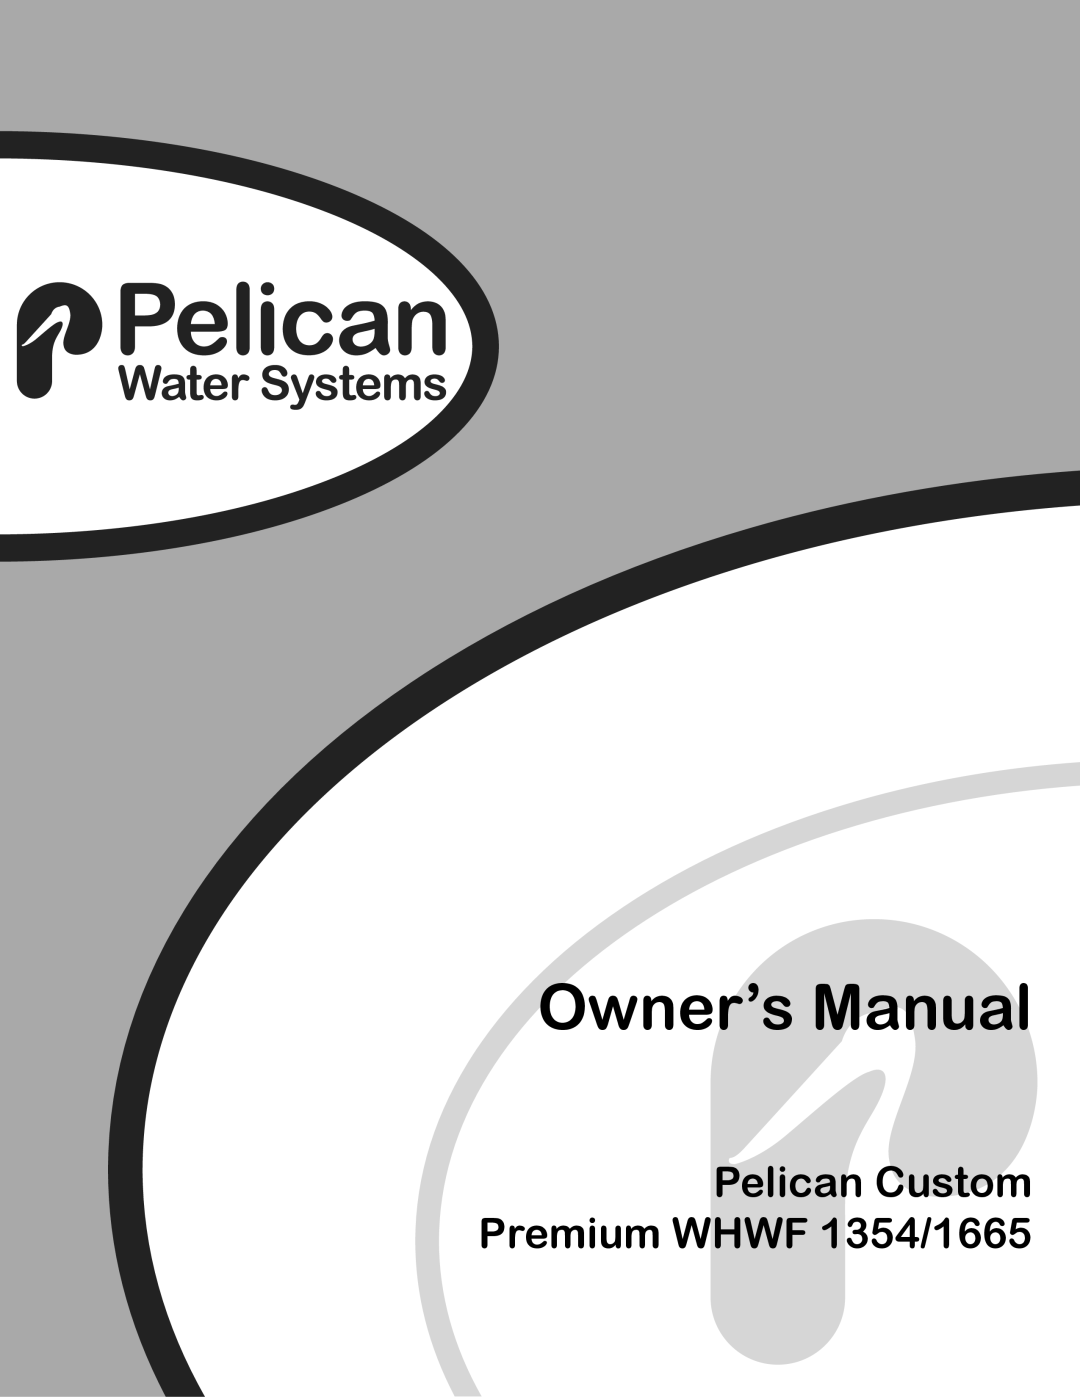 Pelican owner manual Pelican Custom Premium WHWF 1354/1665 